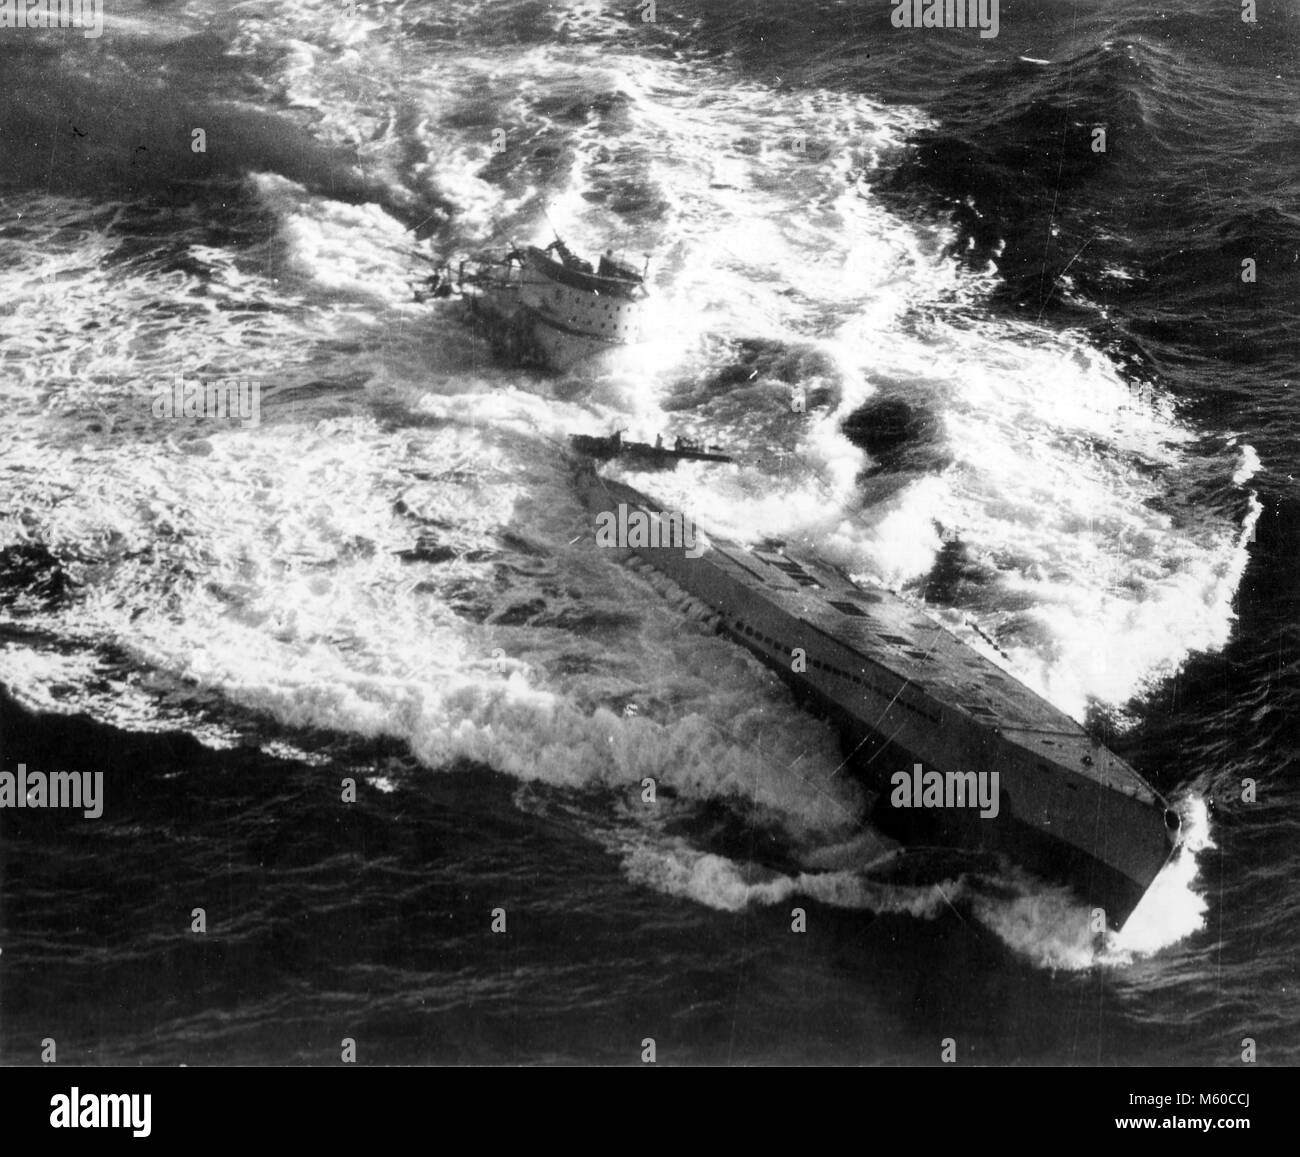 Sous-marin allemand U-185 le naufrage après l'attaque par des avions américains Avenger et sauvage au sud-ouest des Açores le 24 août 1943 Banque D'Images